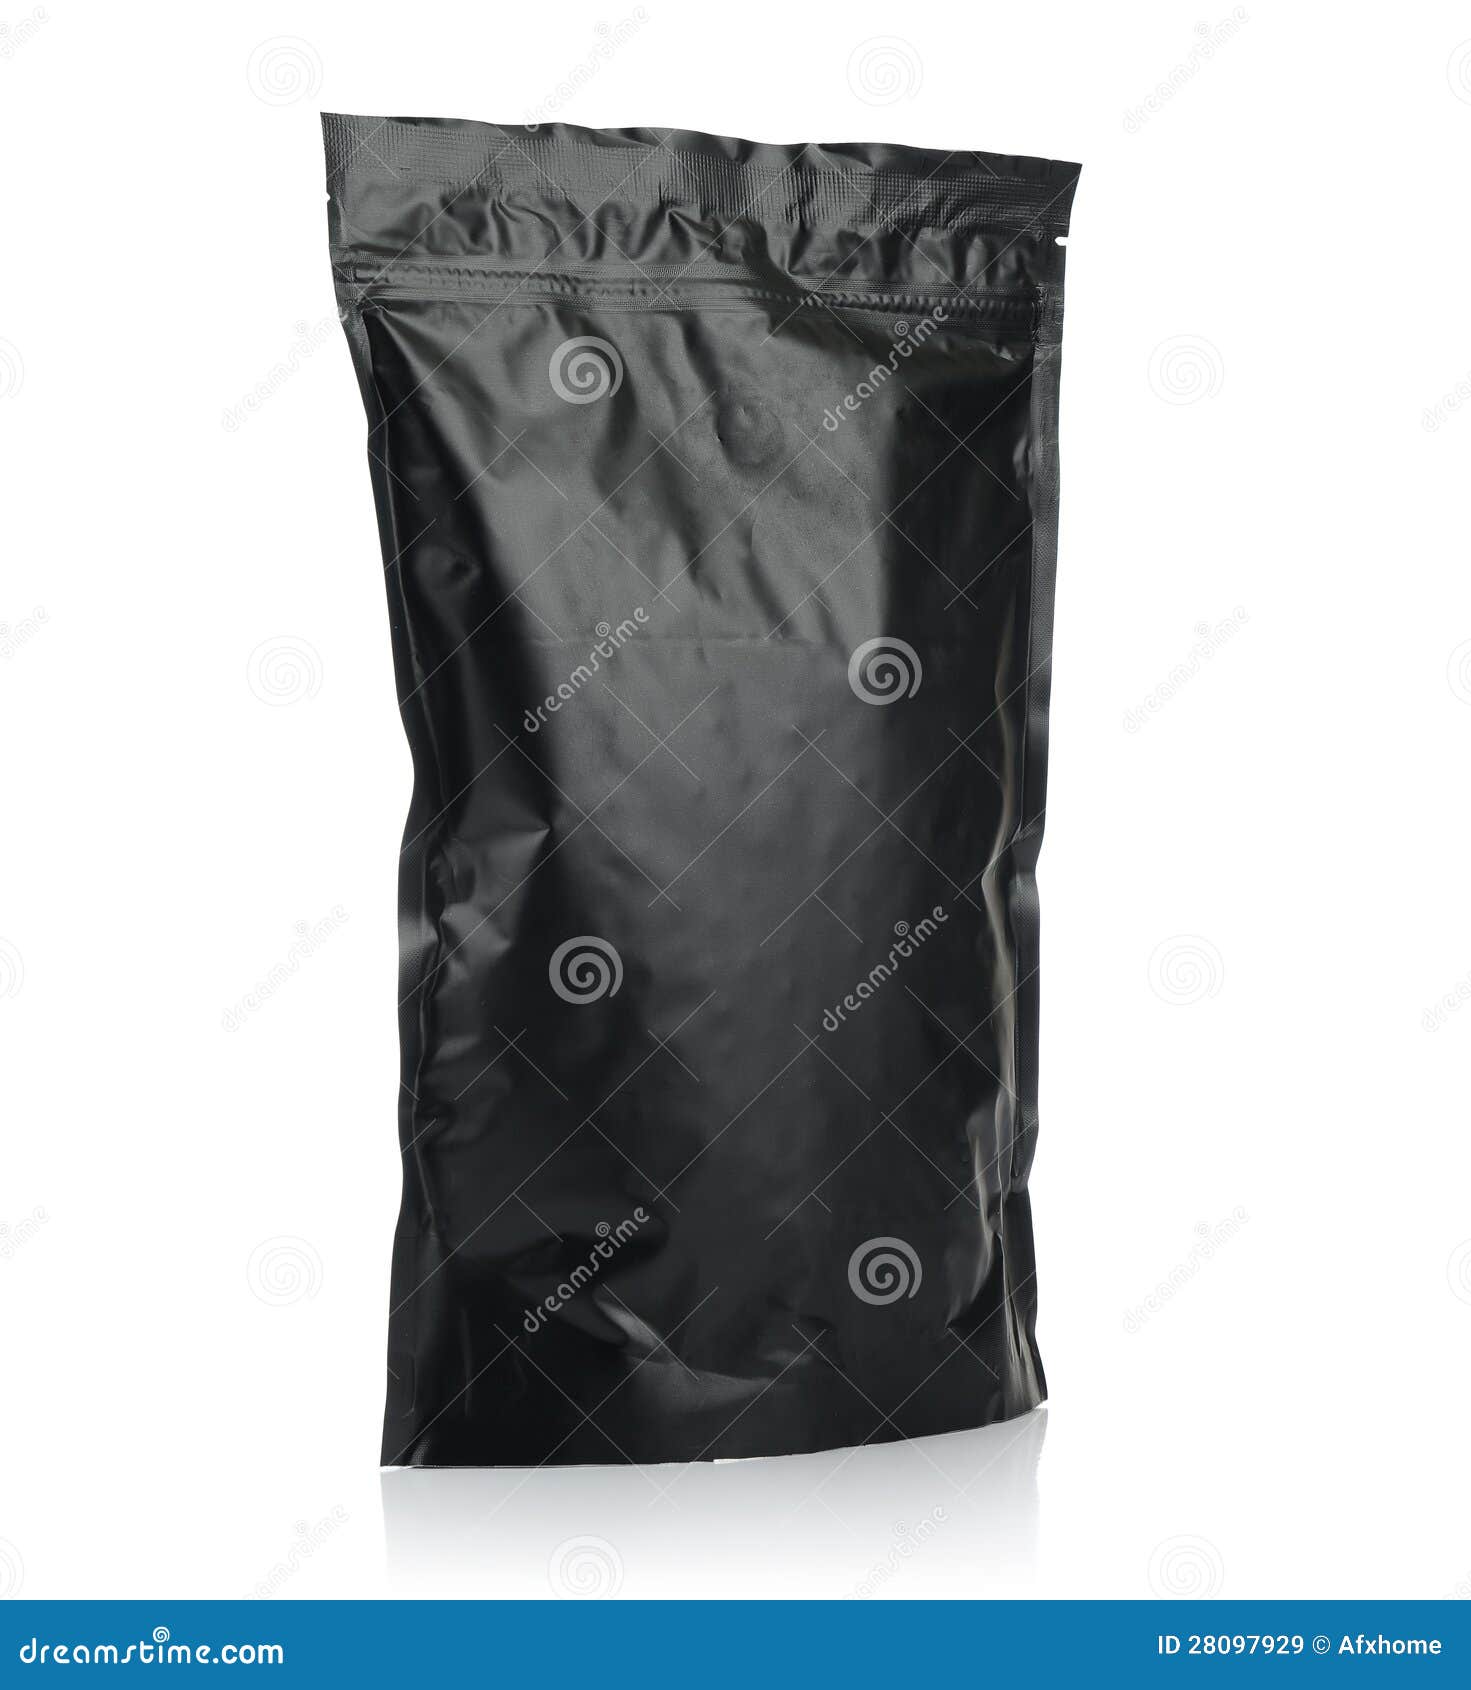 modern vacuum sealed black package of coffee or tea